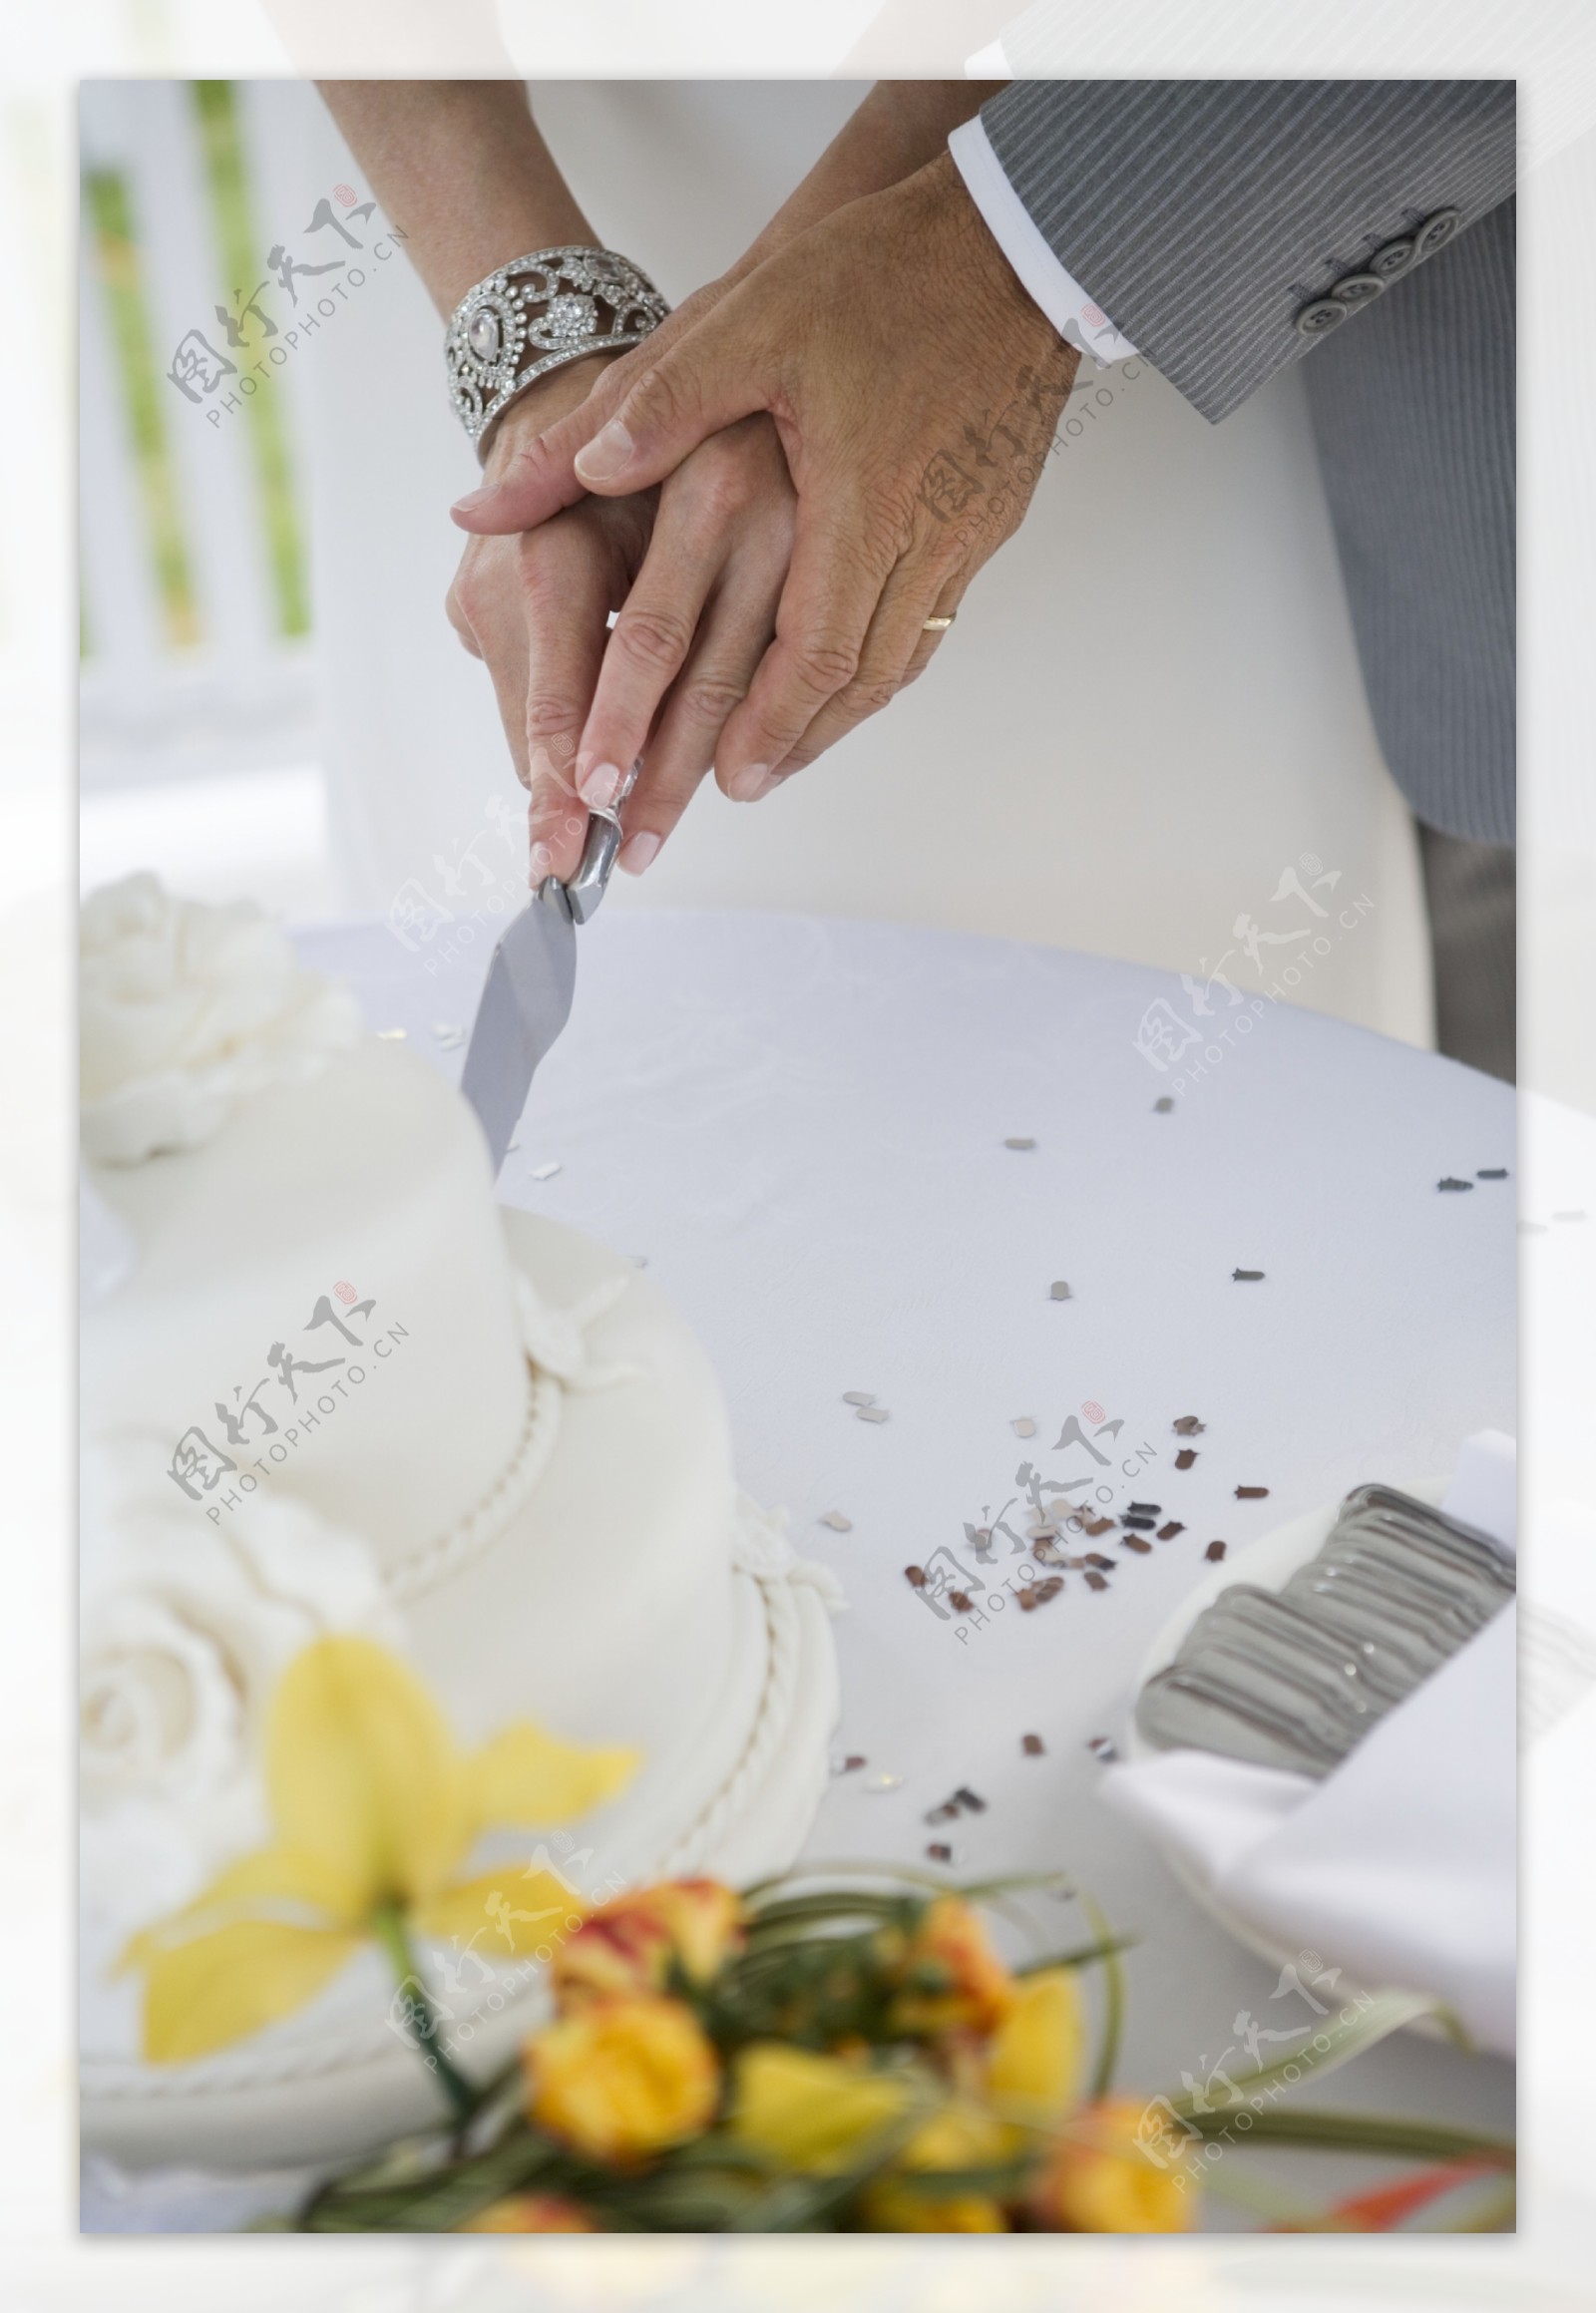 在切蛋糕的夫妻图片